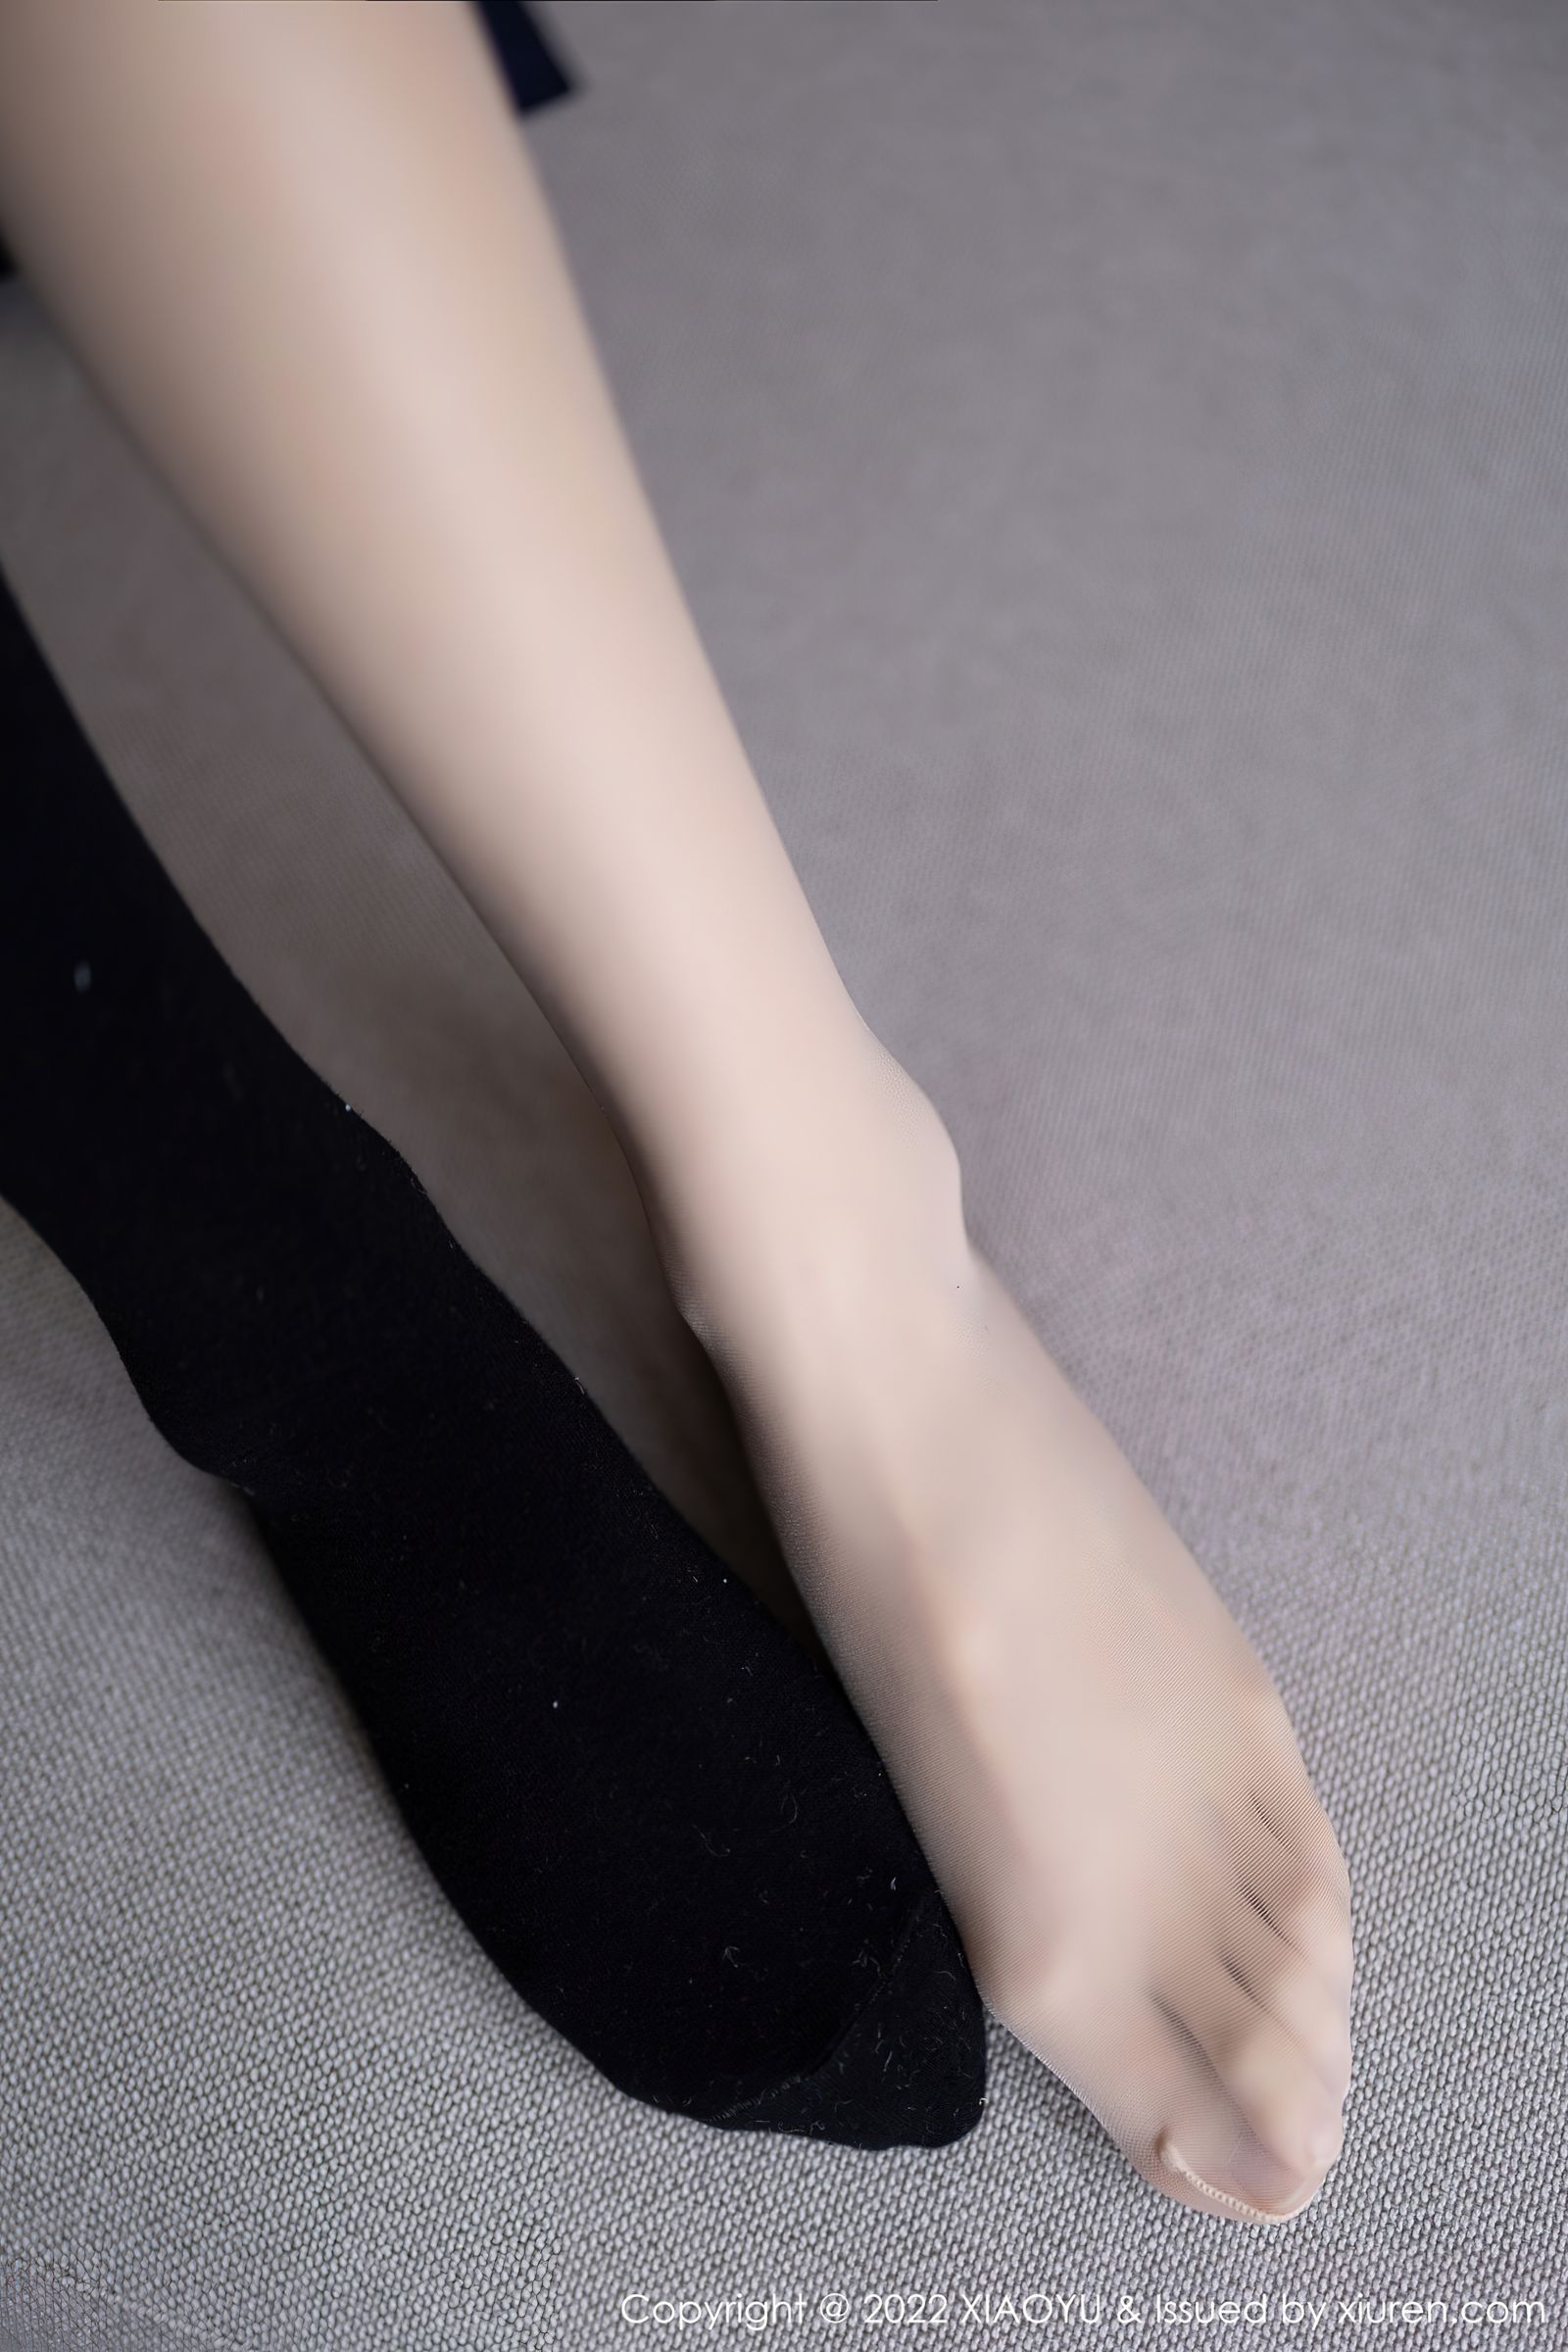 [XIAOYU语画界]-Vol.726-林星阑-白色上衣黑色超短裙搭配原色丝袜-套图之家